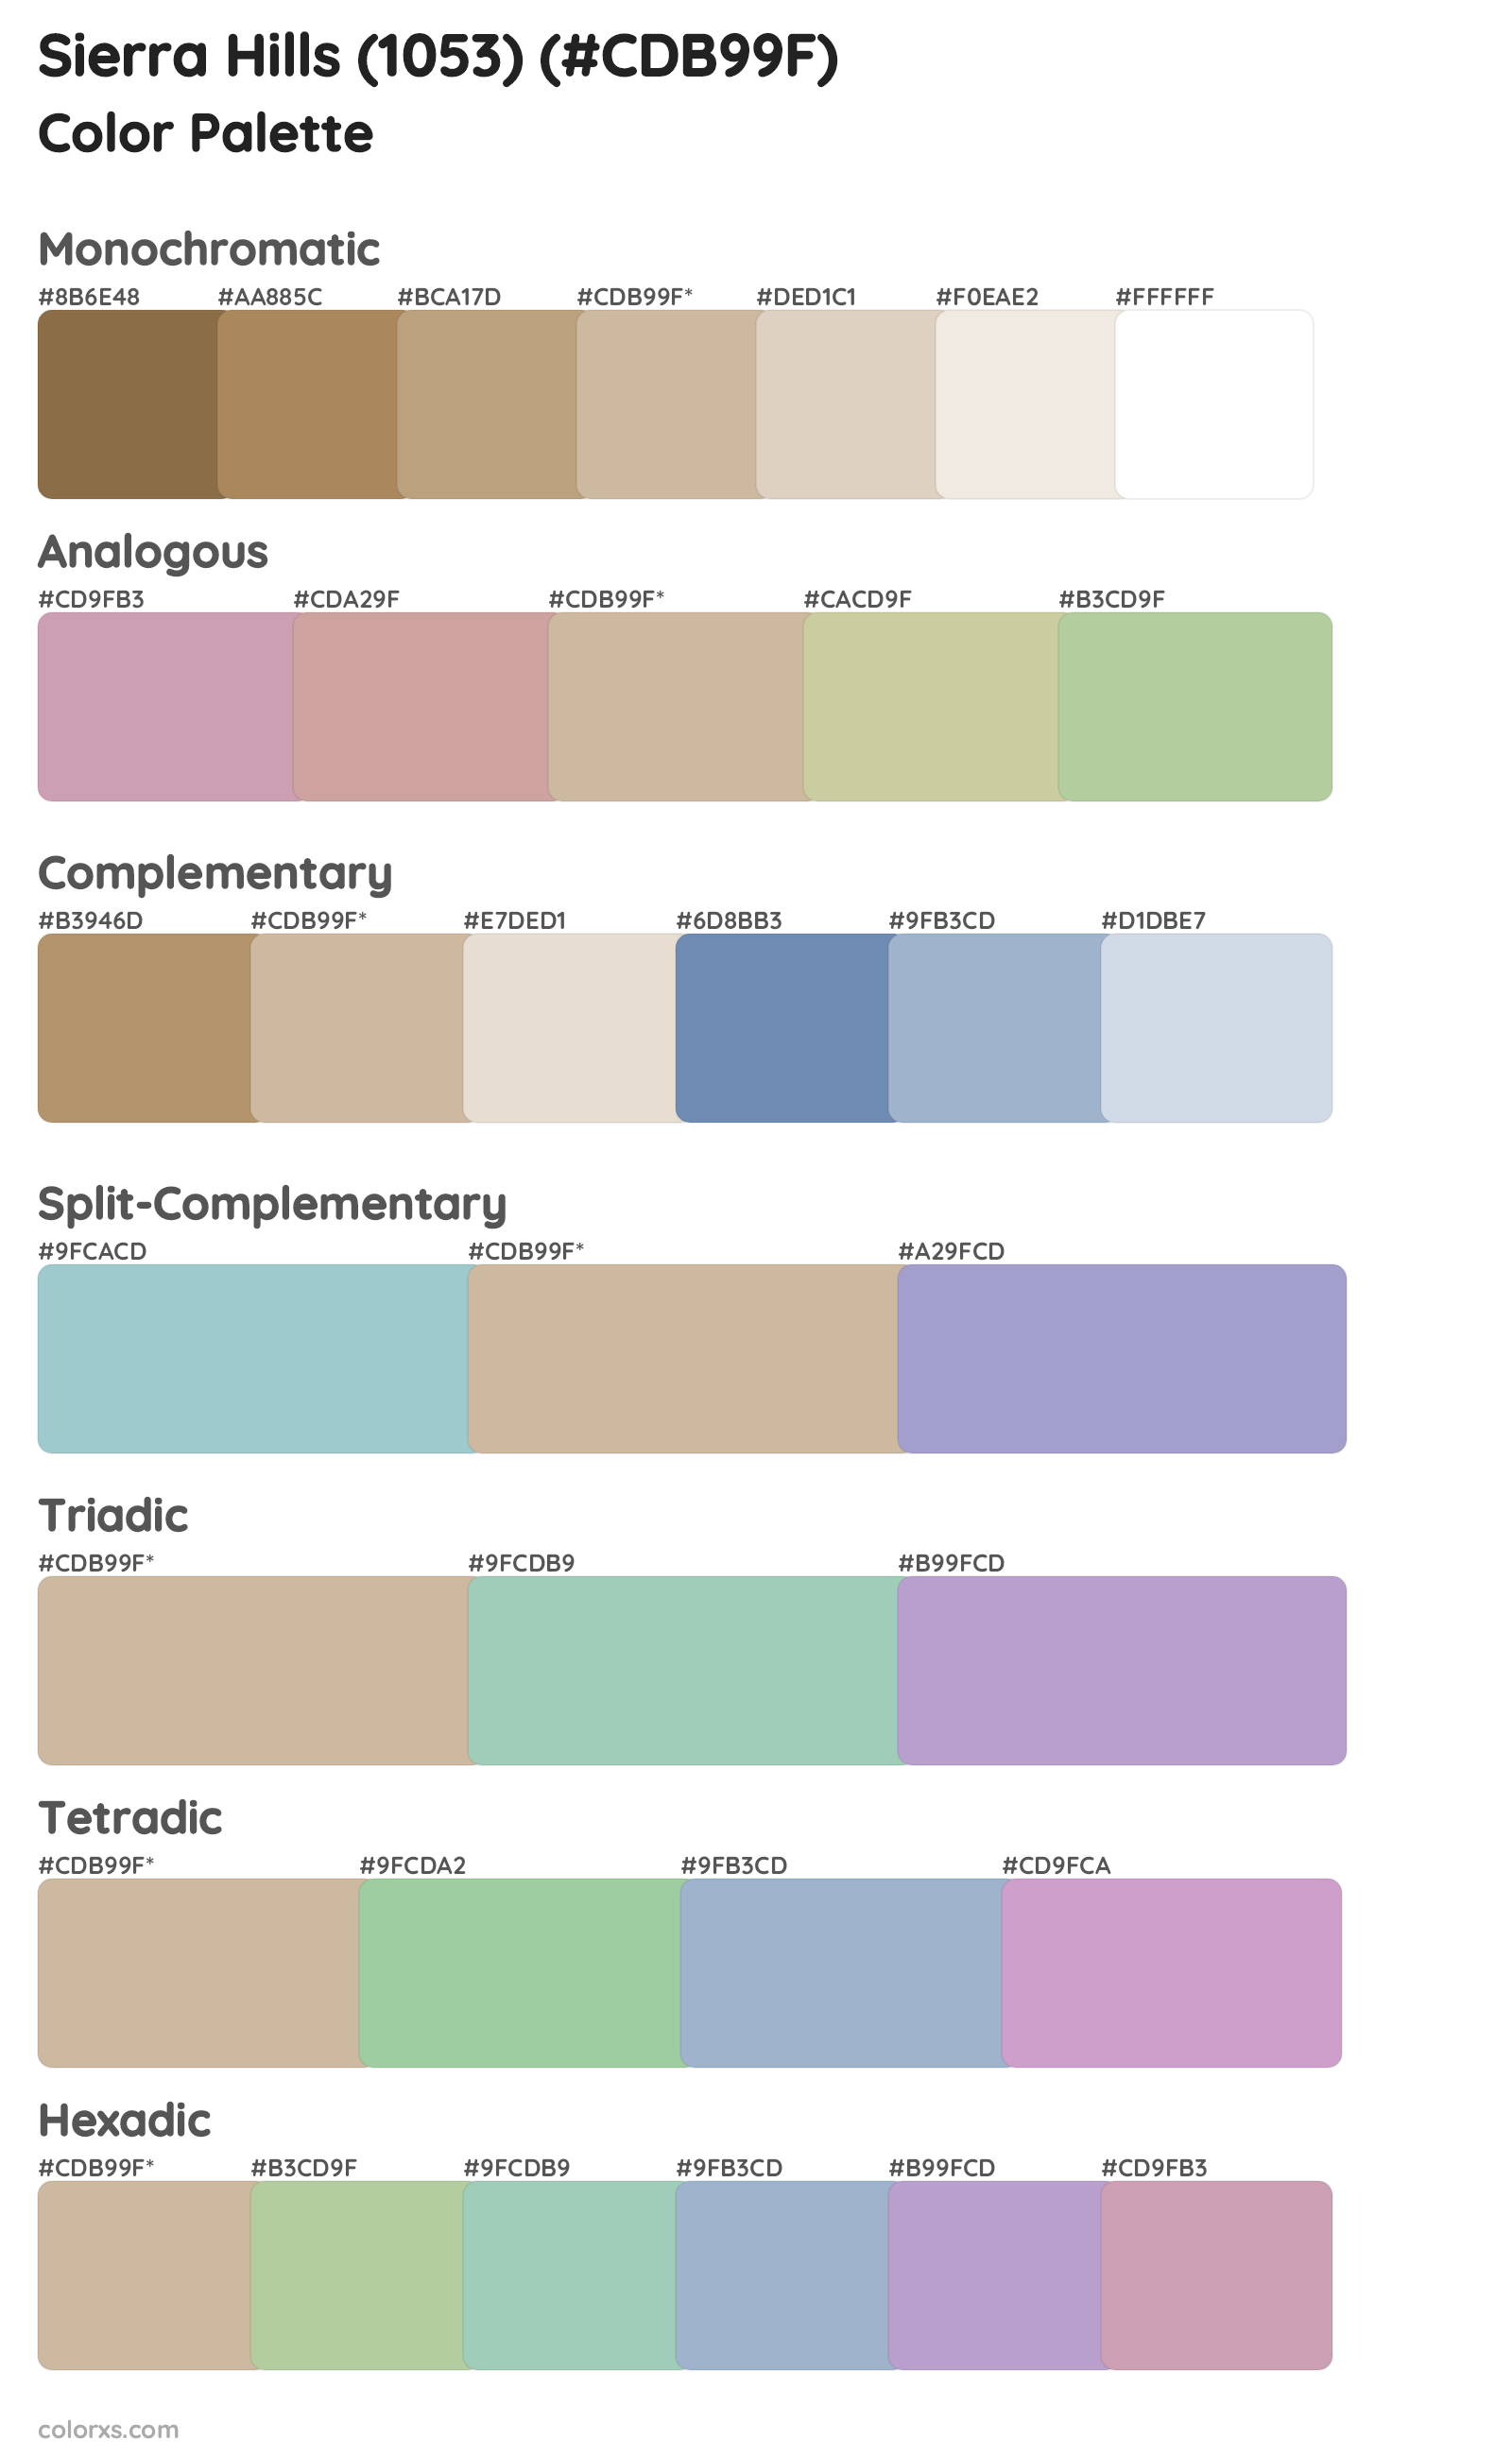 Sierra Hills (1053) Color Scheme Palettes